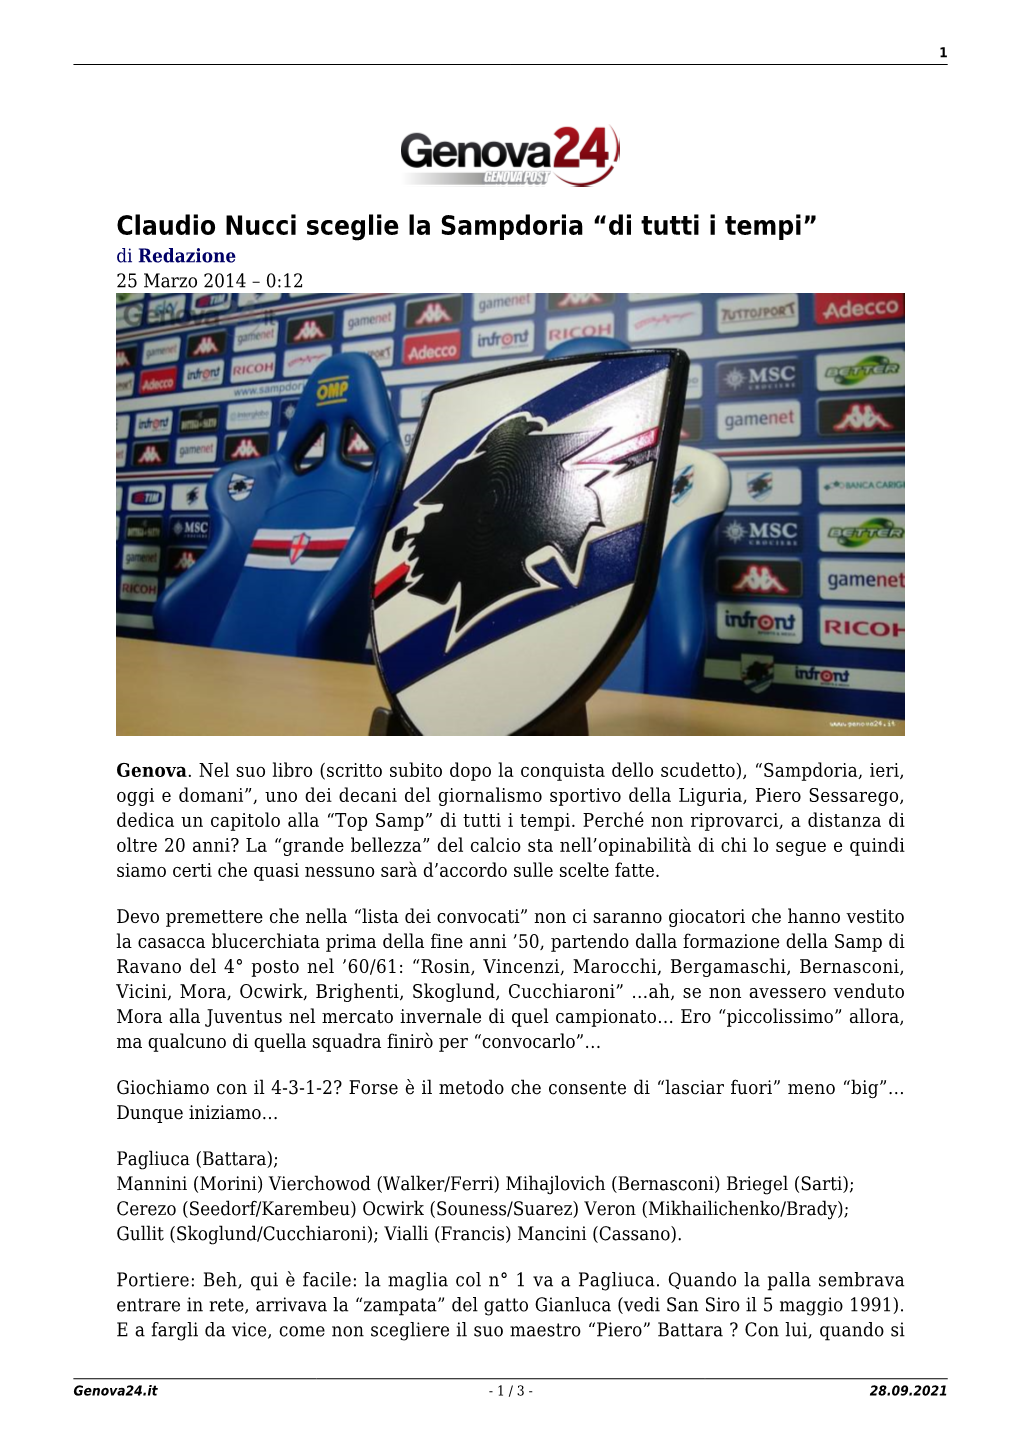 Claudio Nucci Sceglie La Sampdoria “Di Tutti I Tempi” Di Redazione 25 Marzo 2014 – 0:12